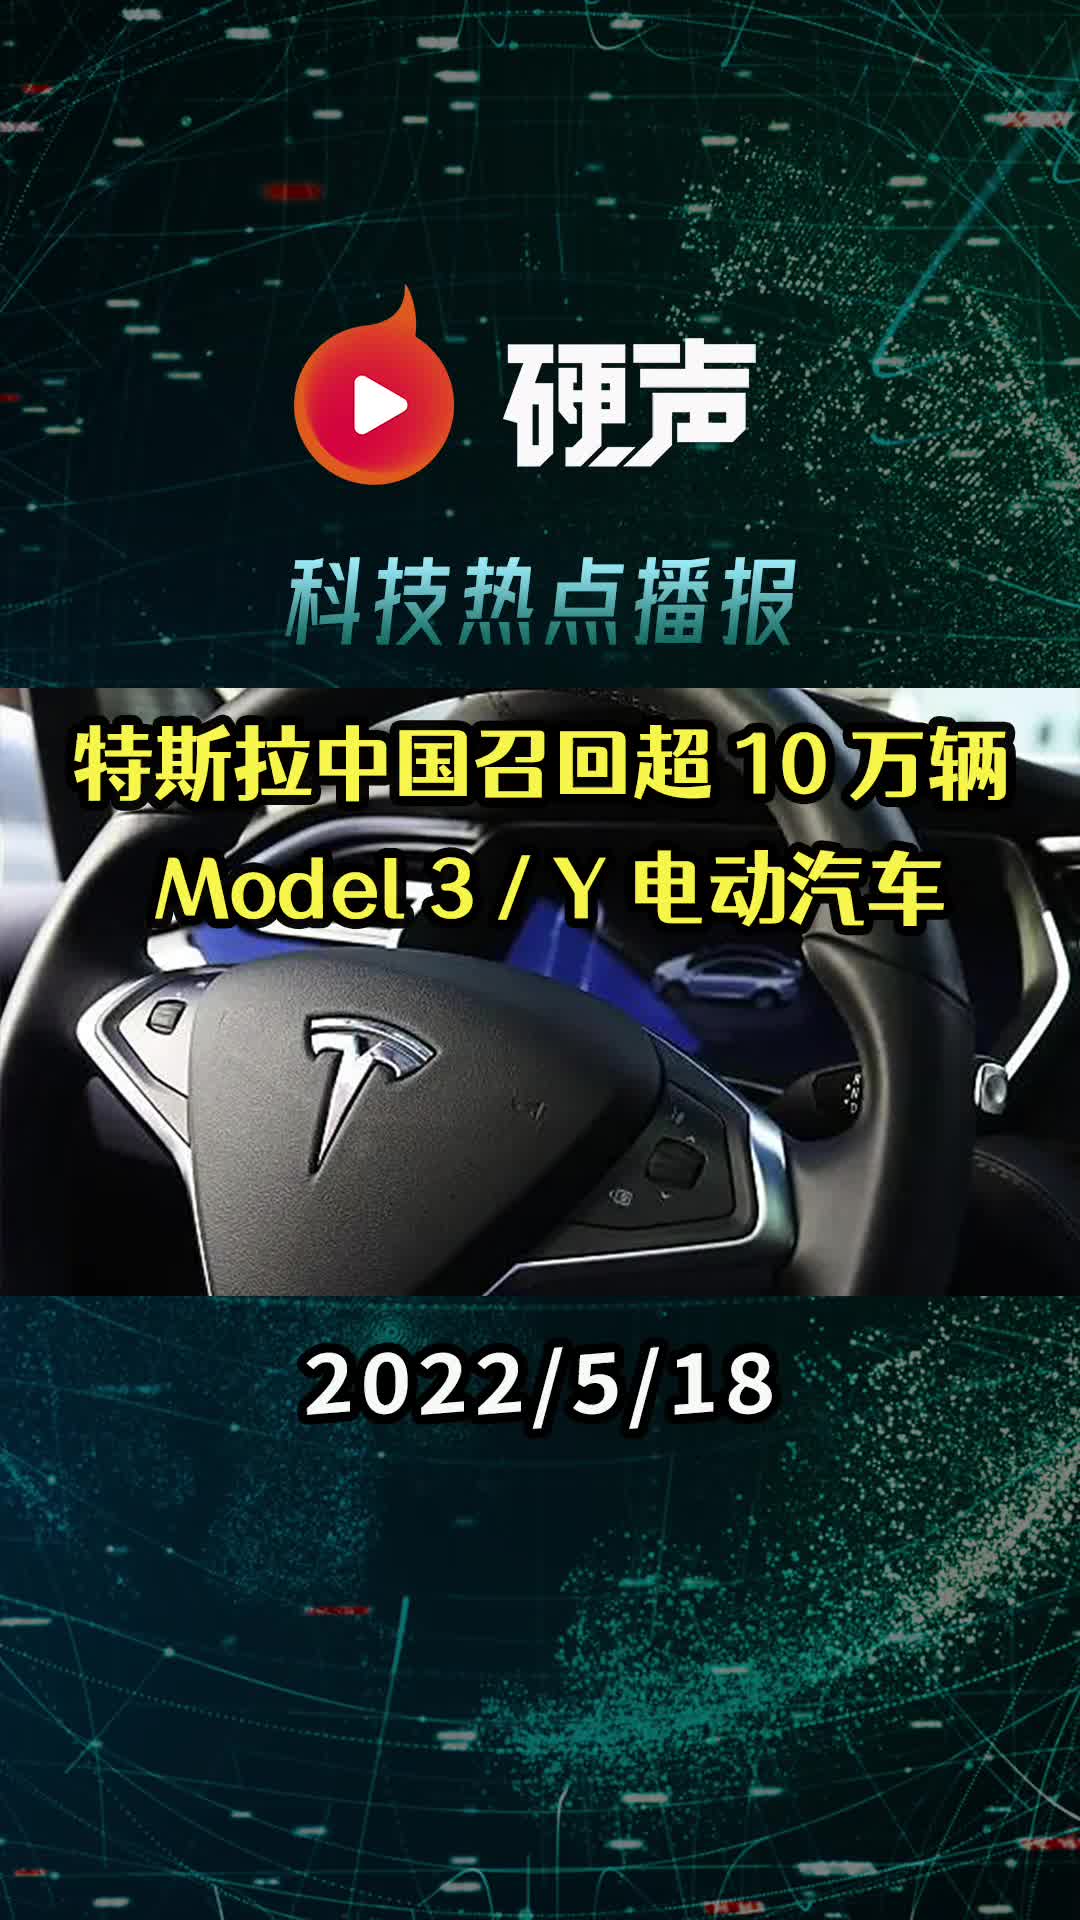 特斯拉中国召回超 10 万辆国产Model 3 / Y 电动汽车;上游原材料成本飙涨,半导体零部件交付周期延长